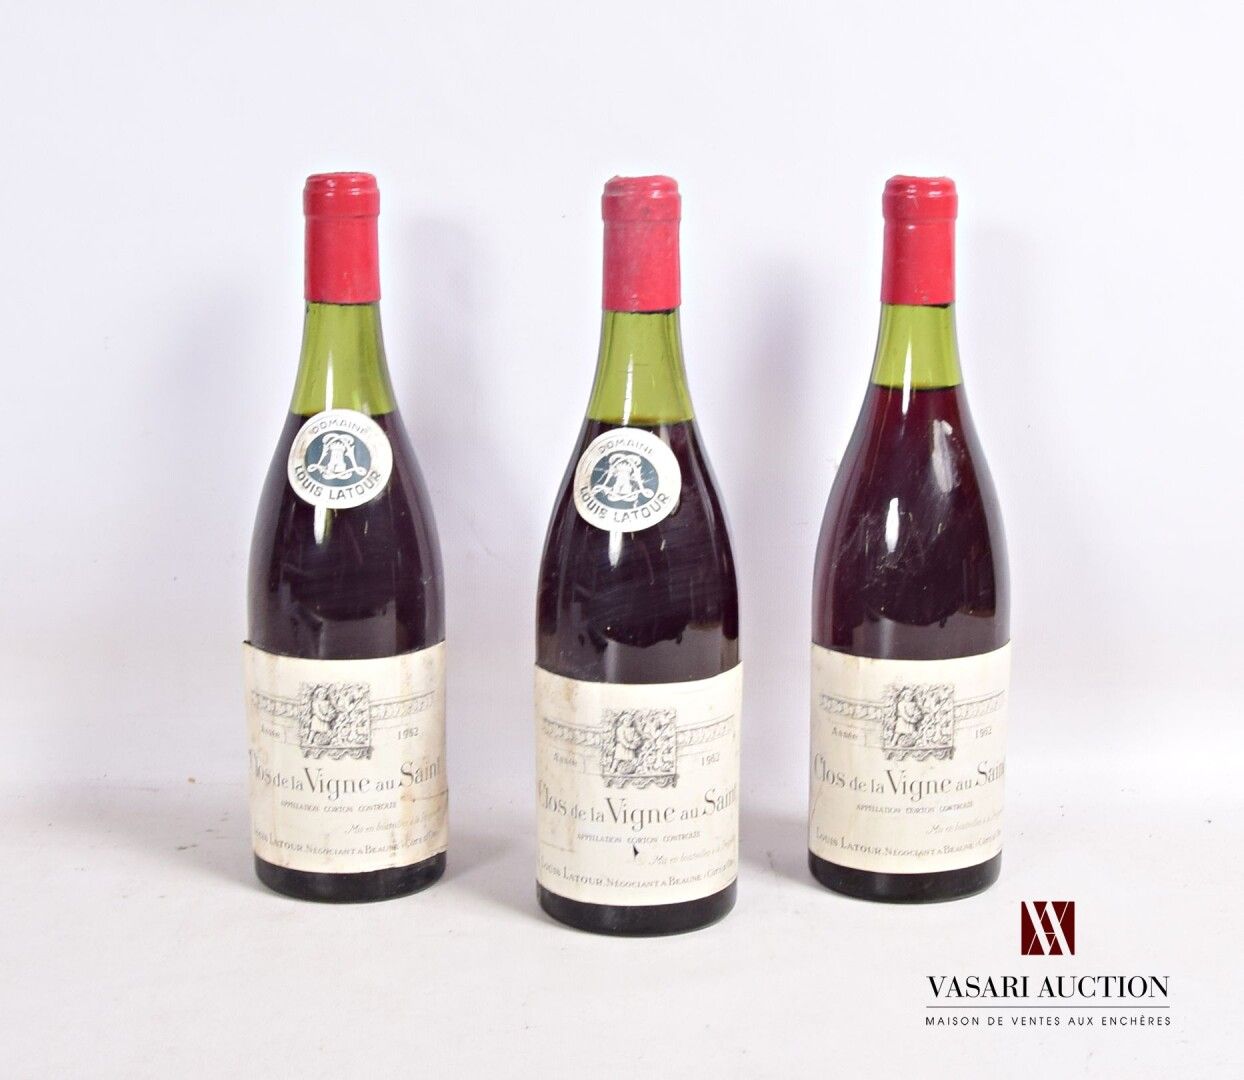 Null 3 bottles CORTON Clos de la Vigne au Saint mise L. Latour neg. 1962

	1 sli&hellip;